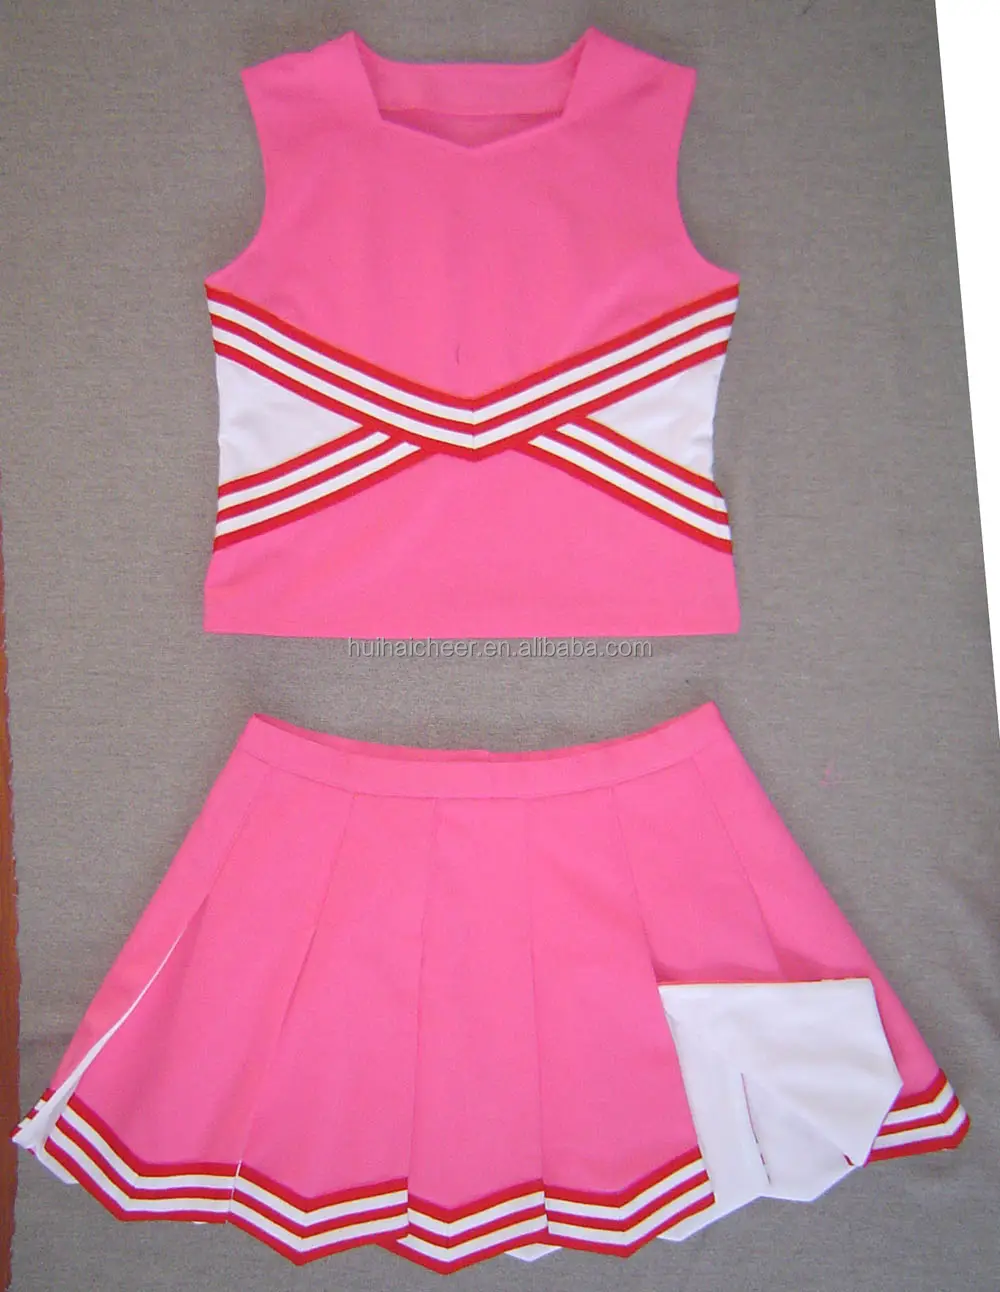 Cheerleader uniform: 100% schweres Polyester gewebe